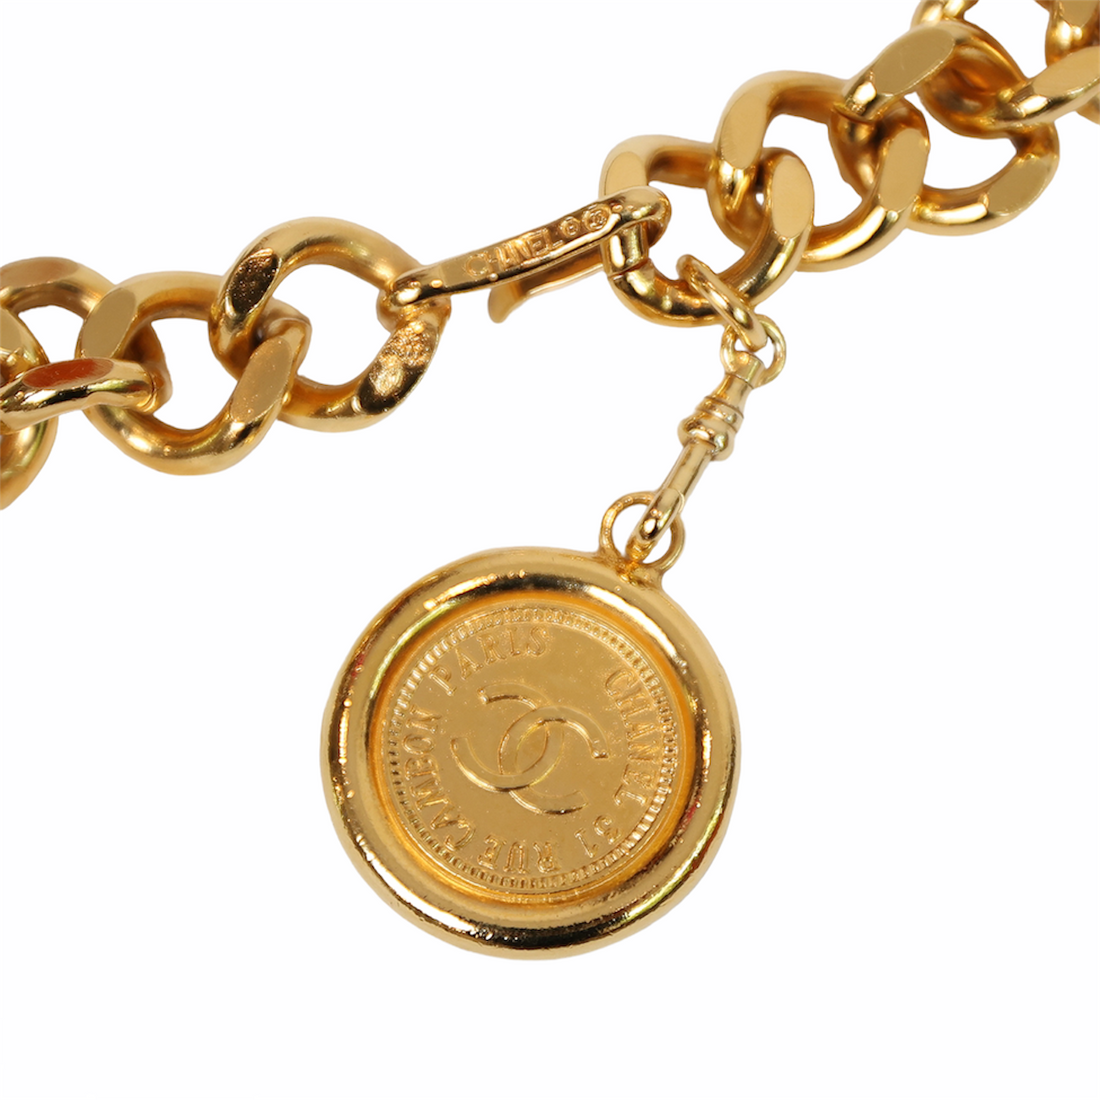 Chanel gold link belt with logo details